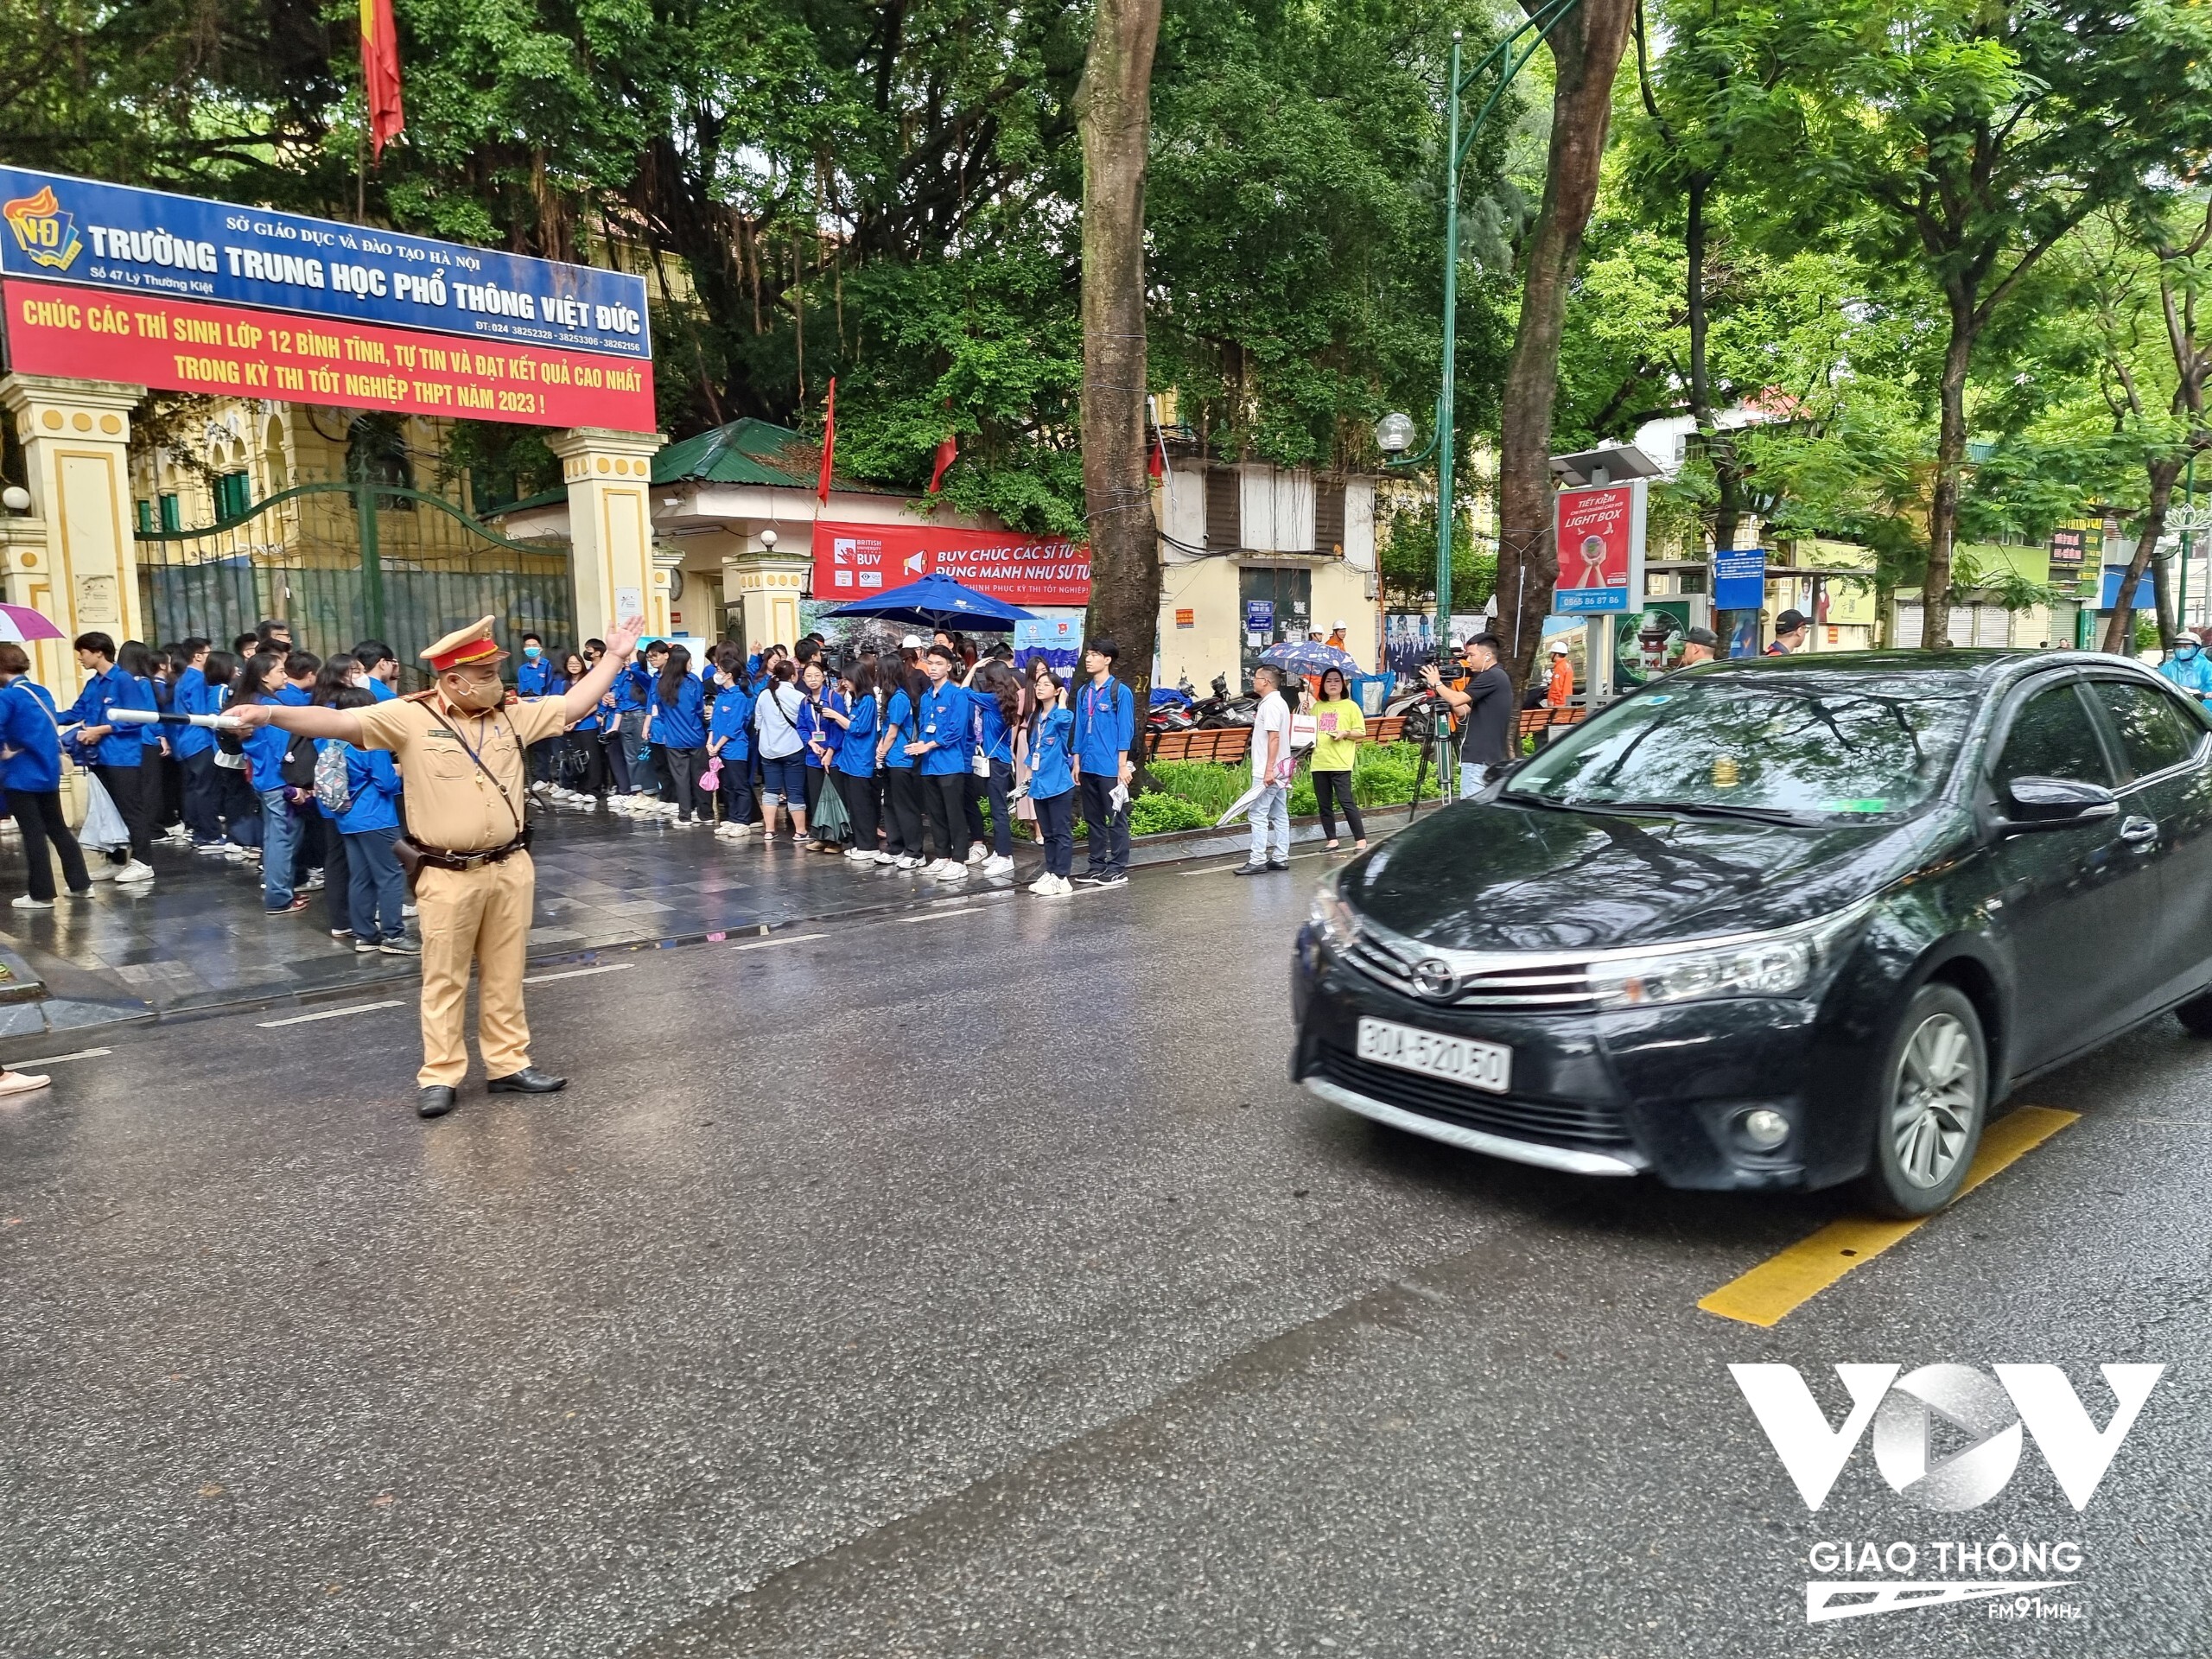 Theo đại úy Nguyễn Mạnh Tuấn, cán bộ đội CSGT số 1: Lực lượng CSGT đã bố trí phương án phân luồng giao thông, lực lượng ứng trực để sẵn sàng đưa các thí sinh đến điểm thi trong tình huống xấu nhất có thể xảy ra.